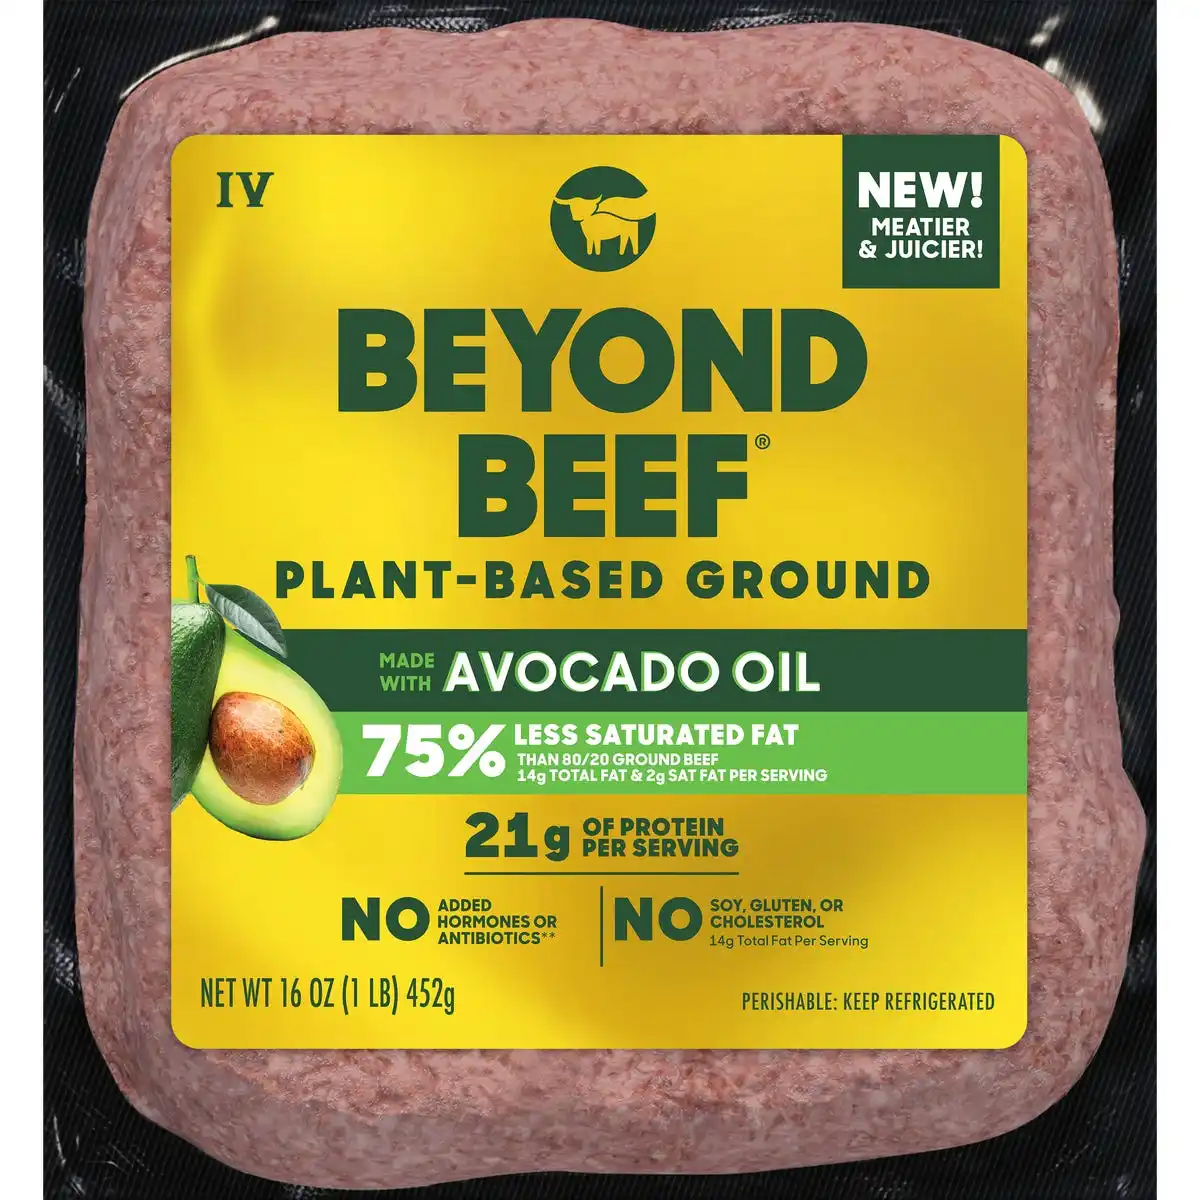 beyond beef packaging